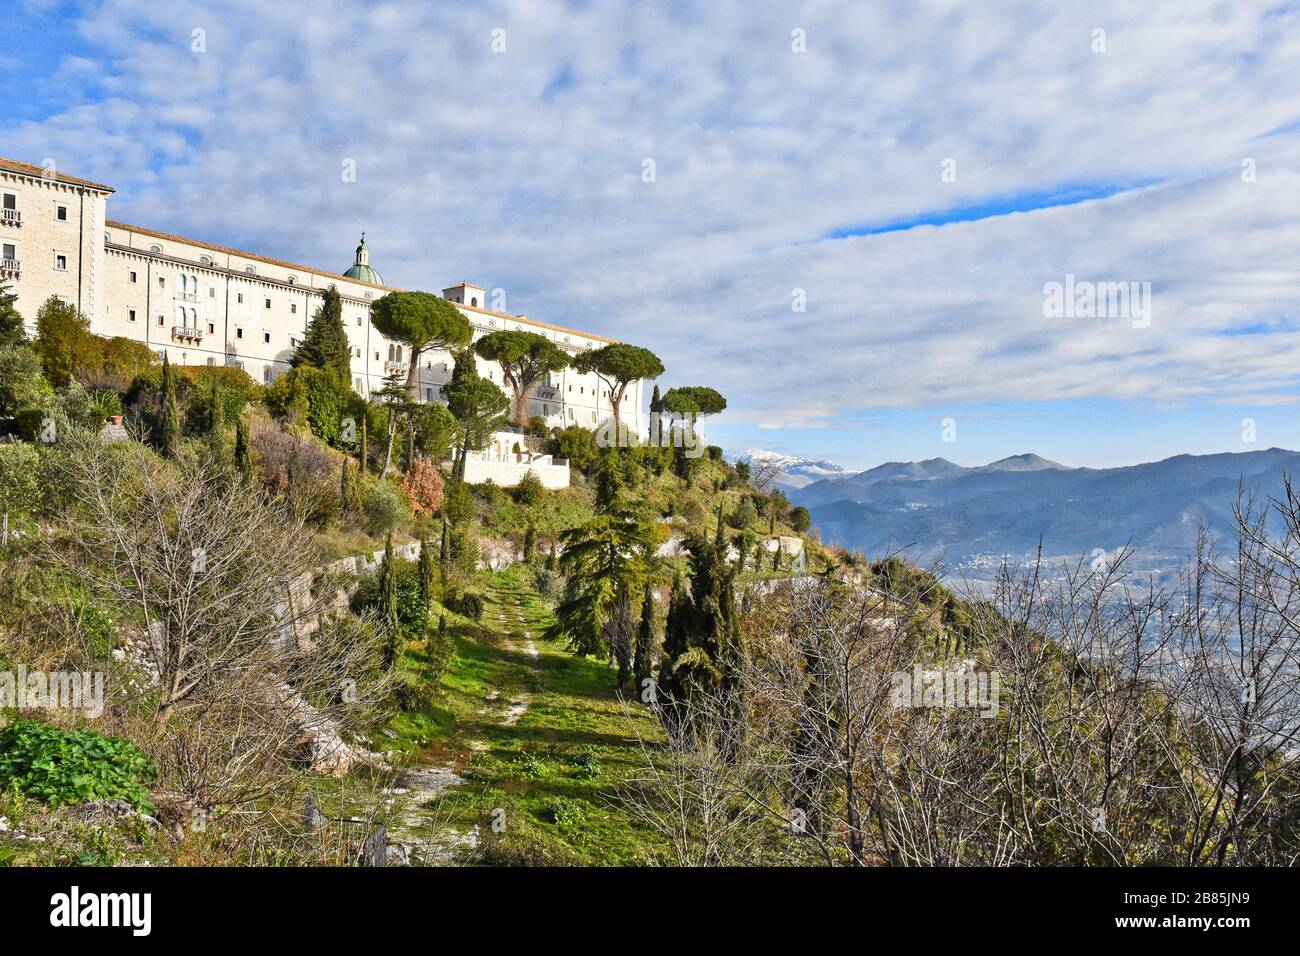 Paysage autour de l'abbaye de Monte Cassino, Italie Banque D'Images